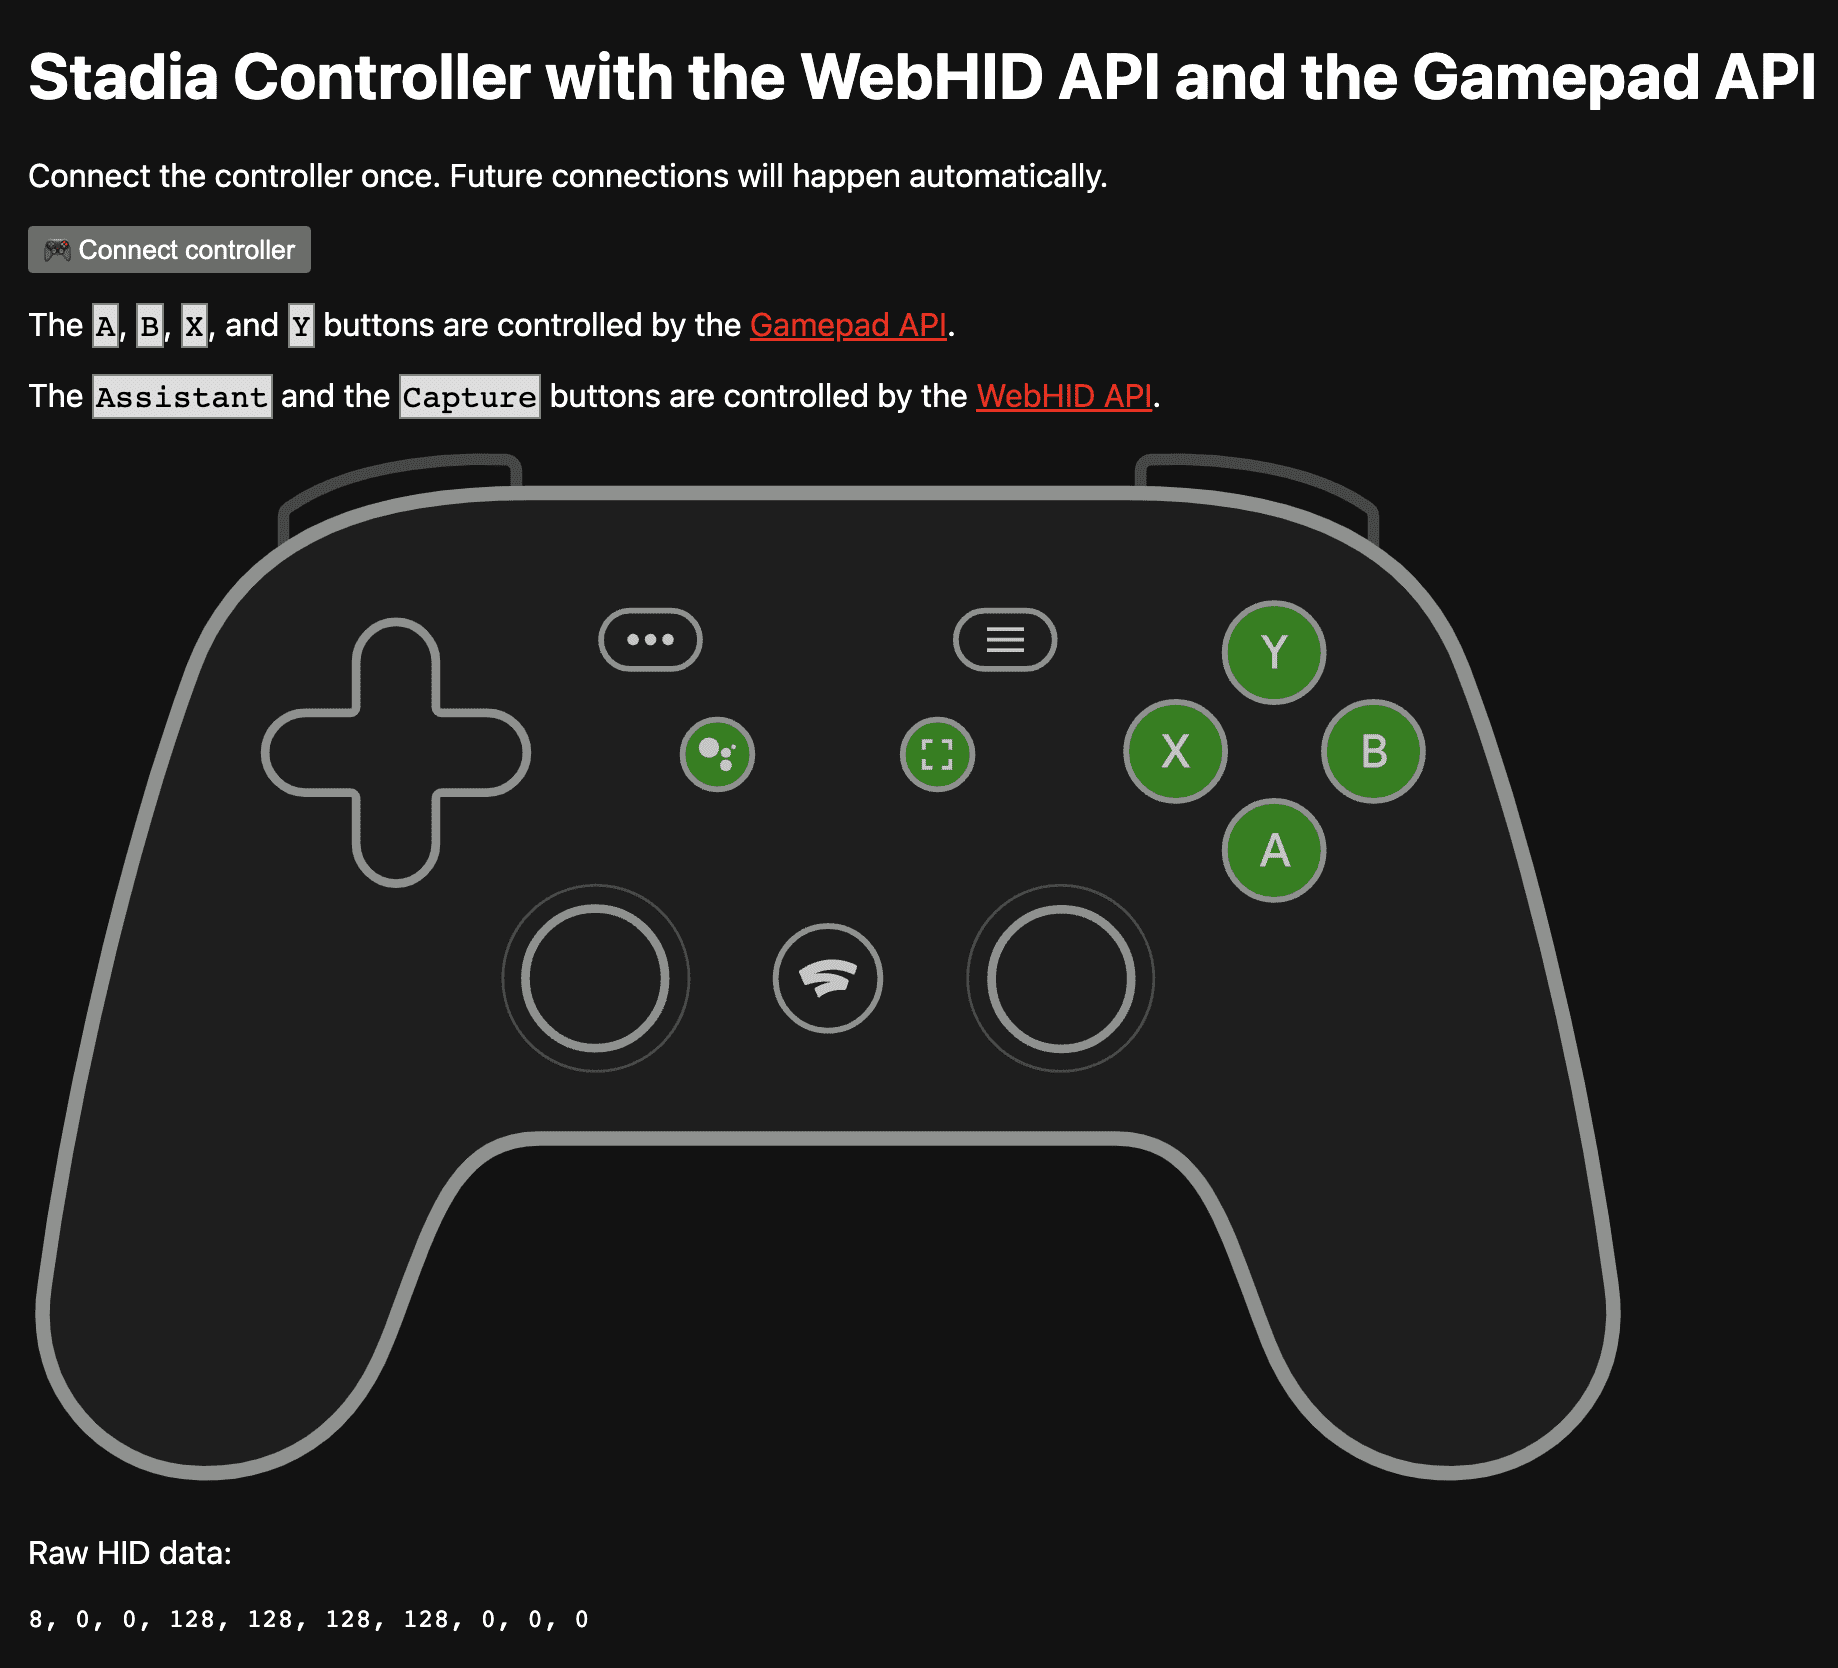 Application de démonstration disponible à l&#39;adresse https://stadia-controller-webhid-gamepad.glitch.me/ présentant les boutons A, B, X et Y contrôlés par l&#39;API Gamepad, ainsi que les boutons Assistant et Capture contrôlés par l&#39;API WebHID